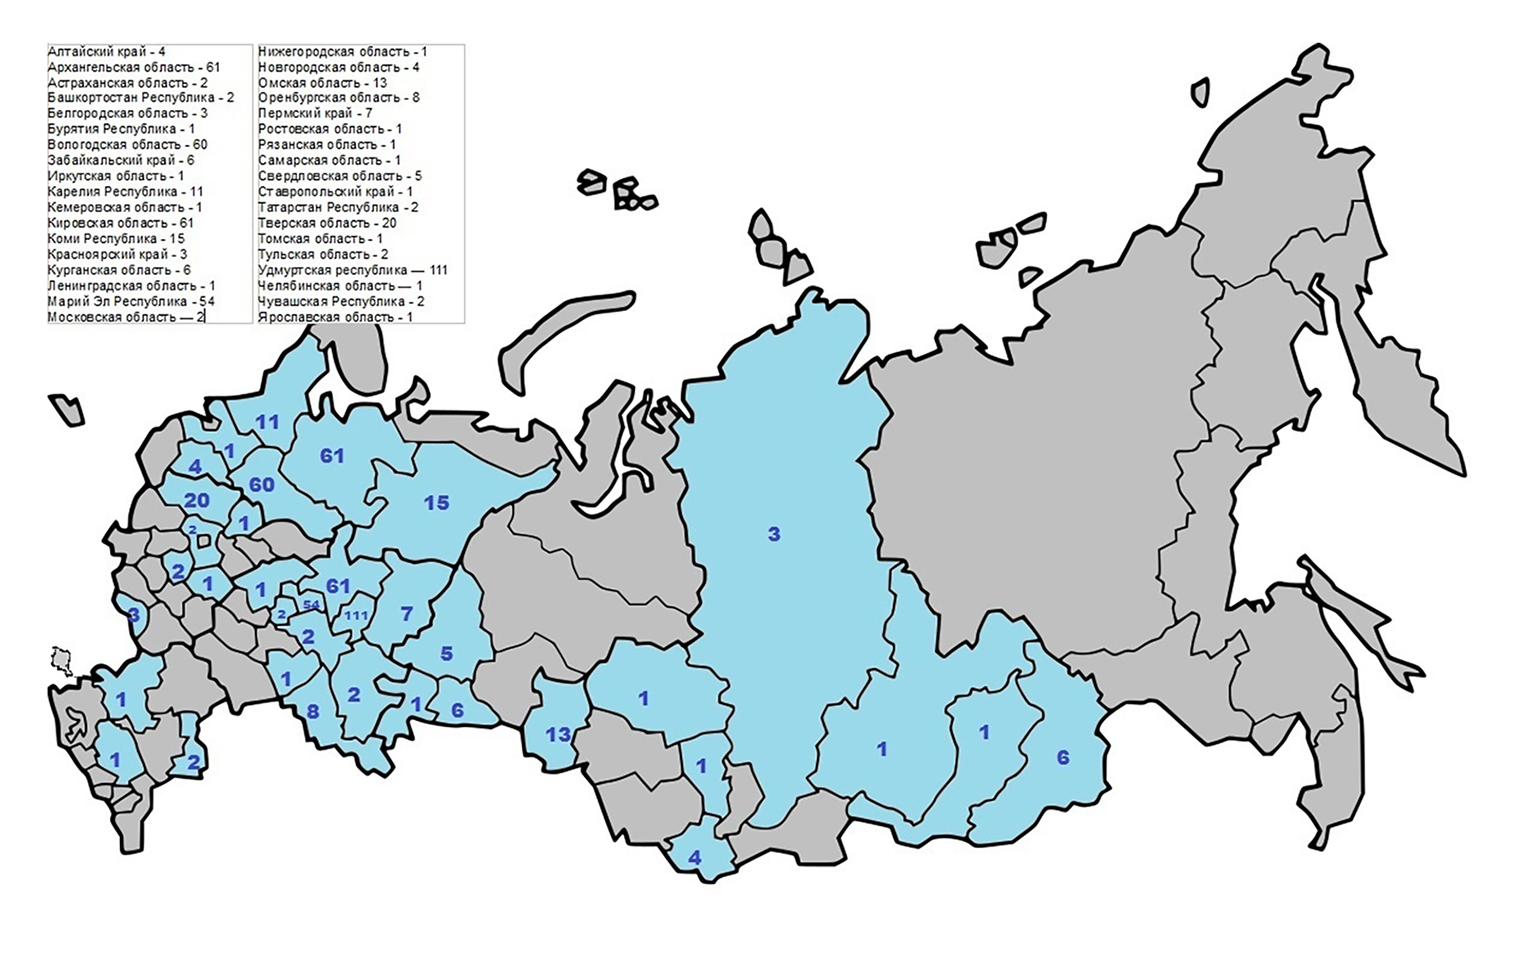 В нашей картотеке собраны адреса и группы сельских библиотек почти из 40 российских регионов